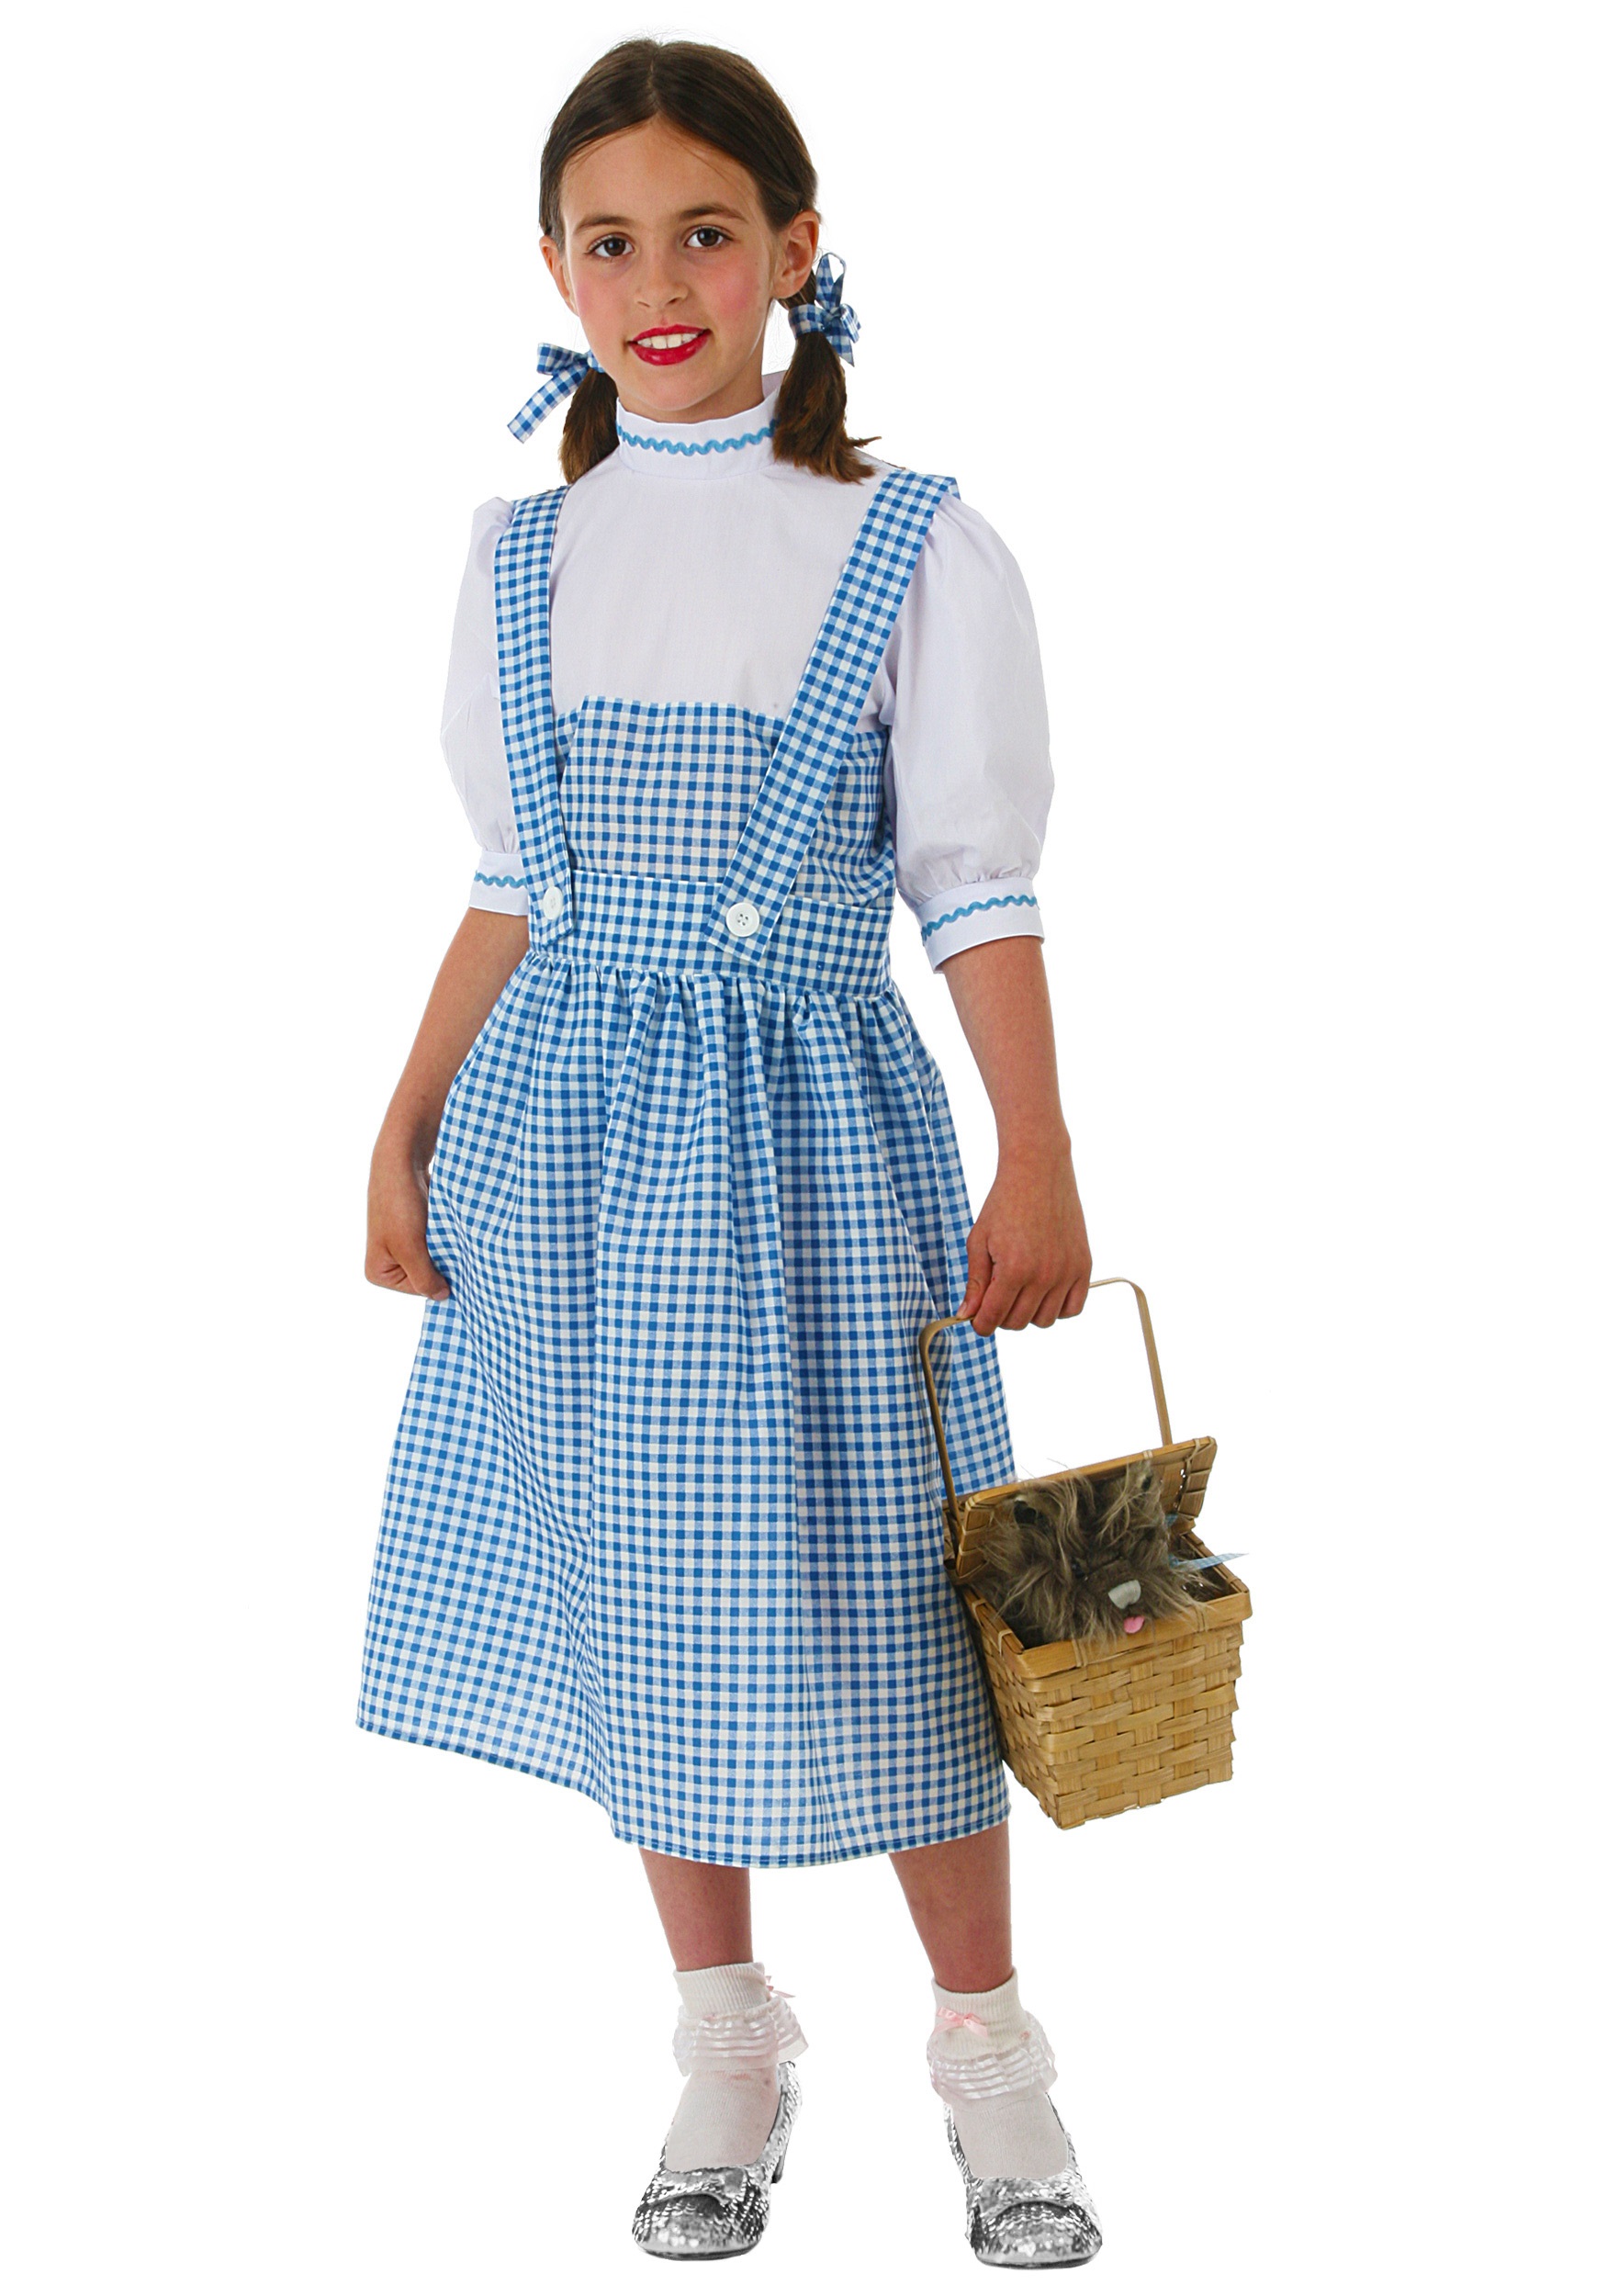 Kid’s Kansas Girl Dress Costume